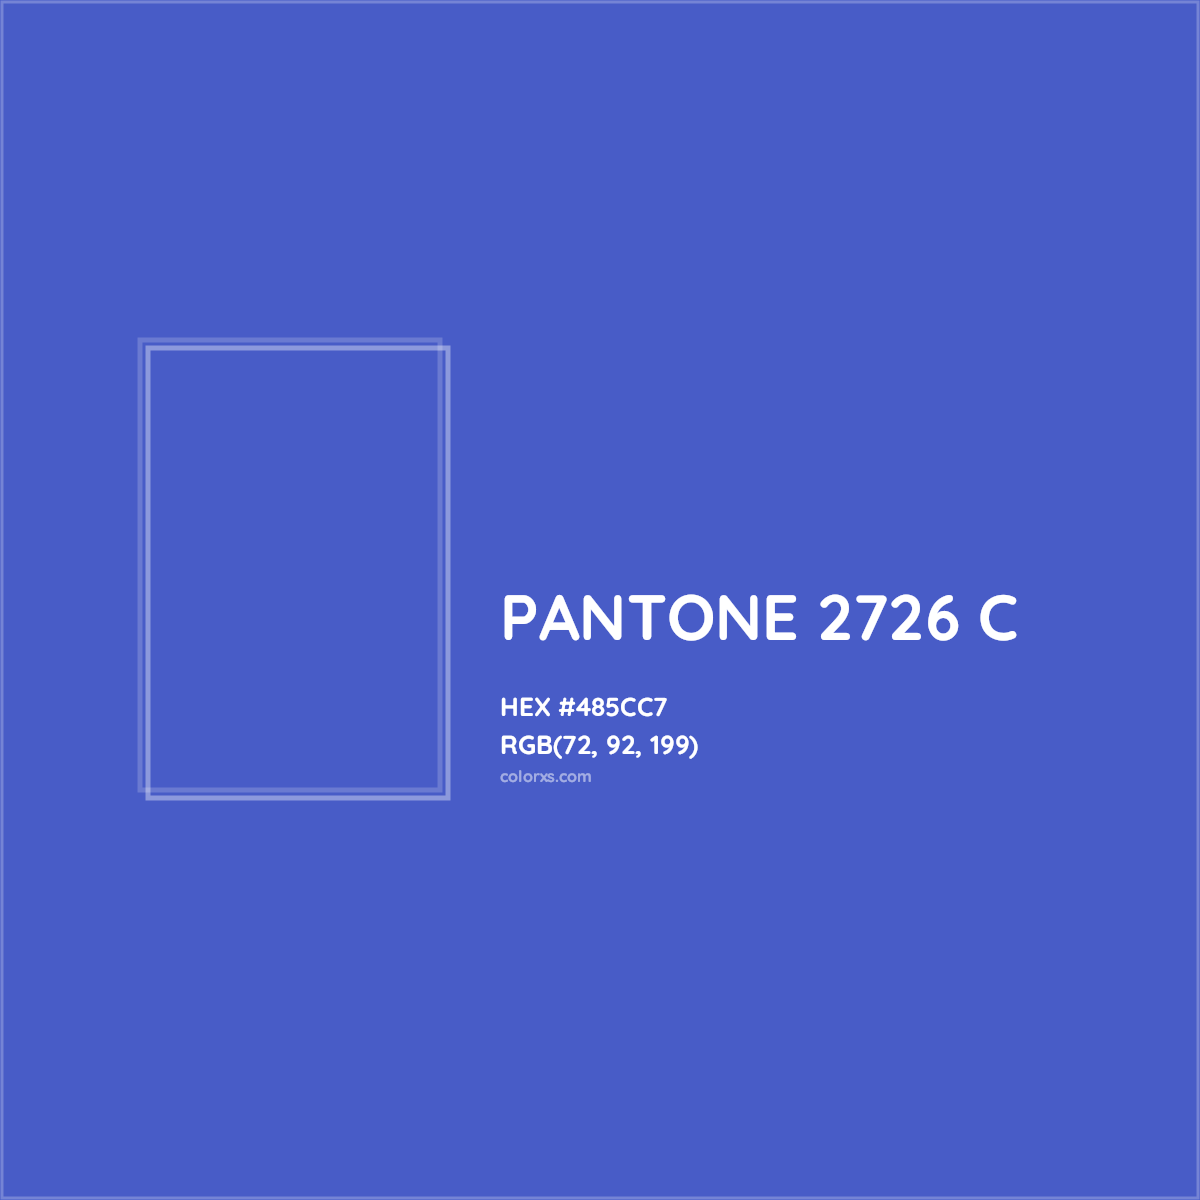 HEX #485CC7 PANTONE 2726 C CMS Pantone PMS - Color Code